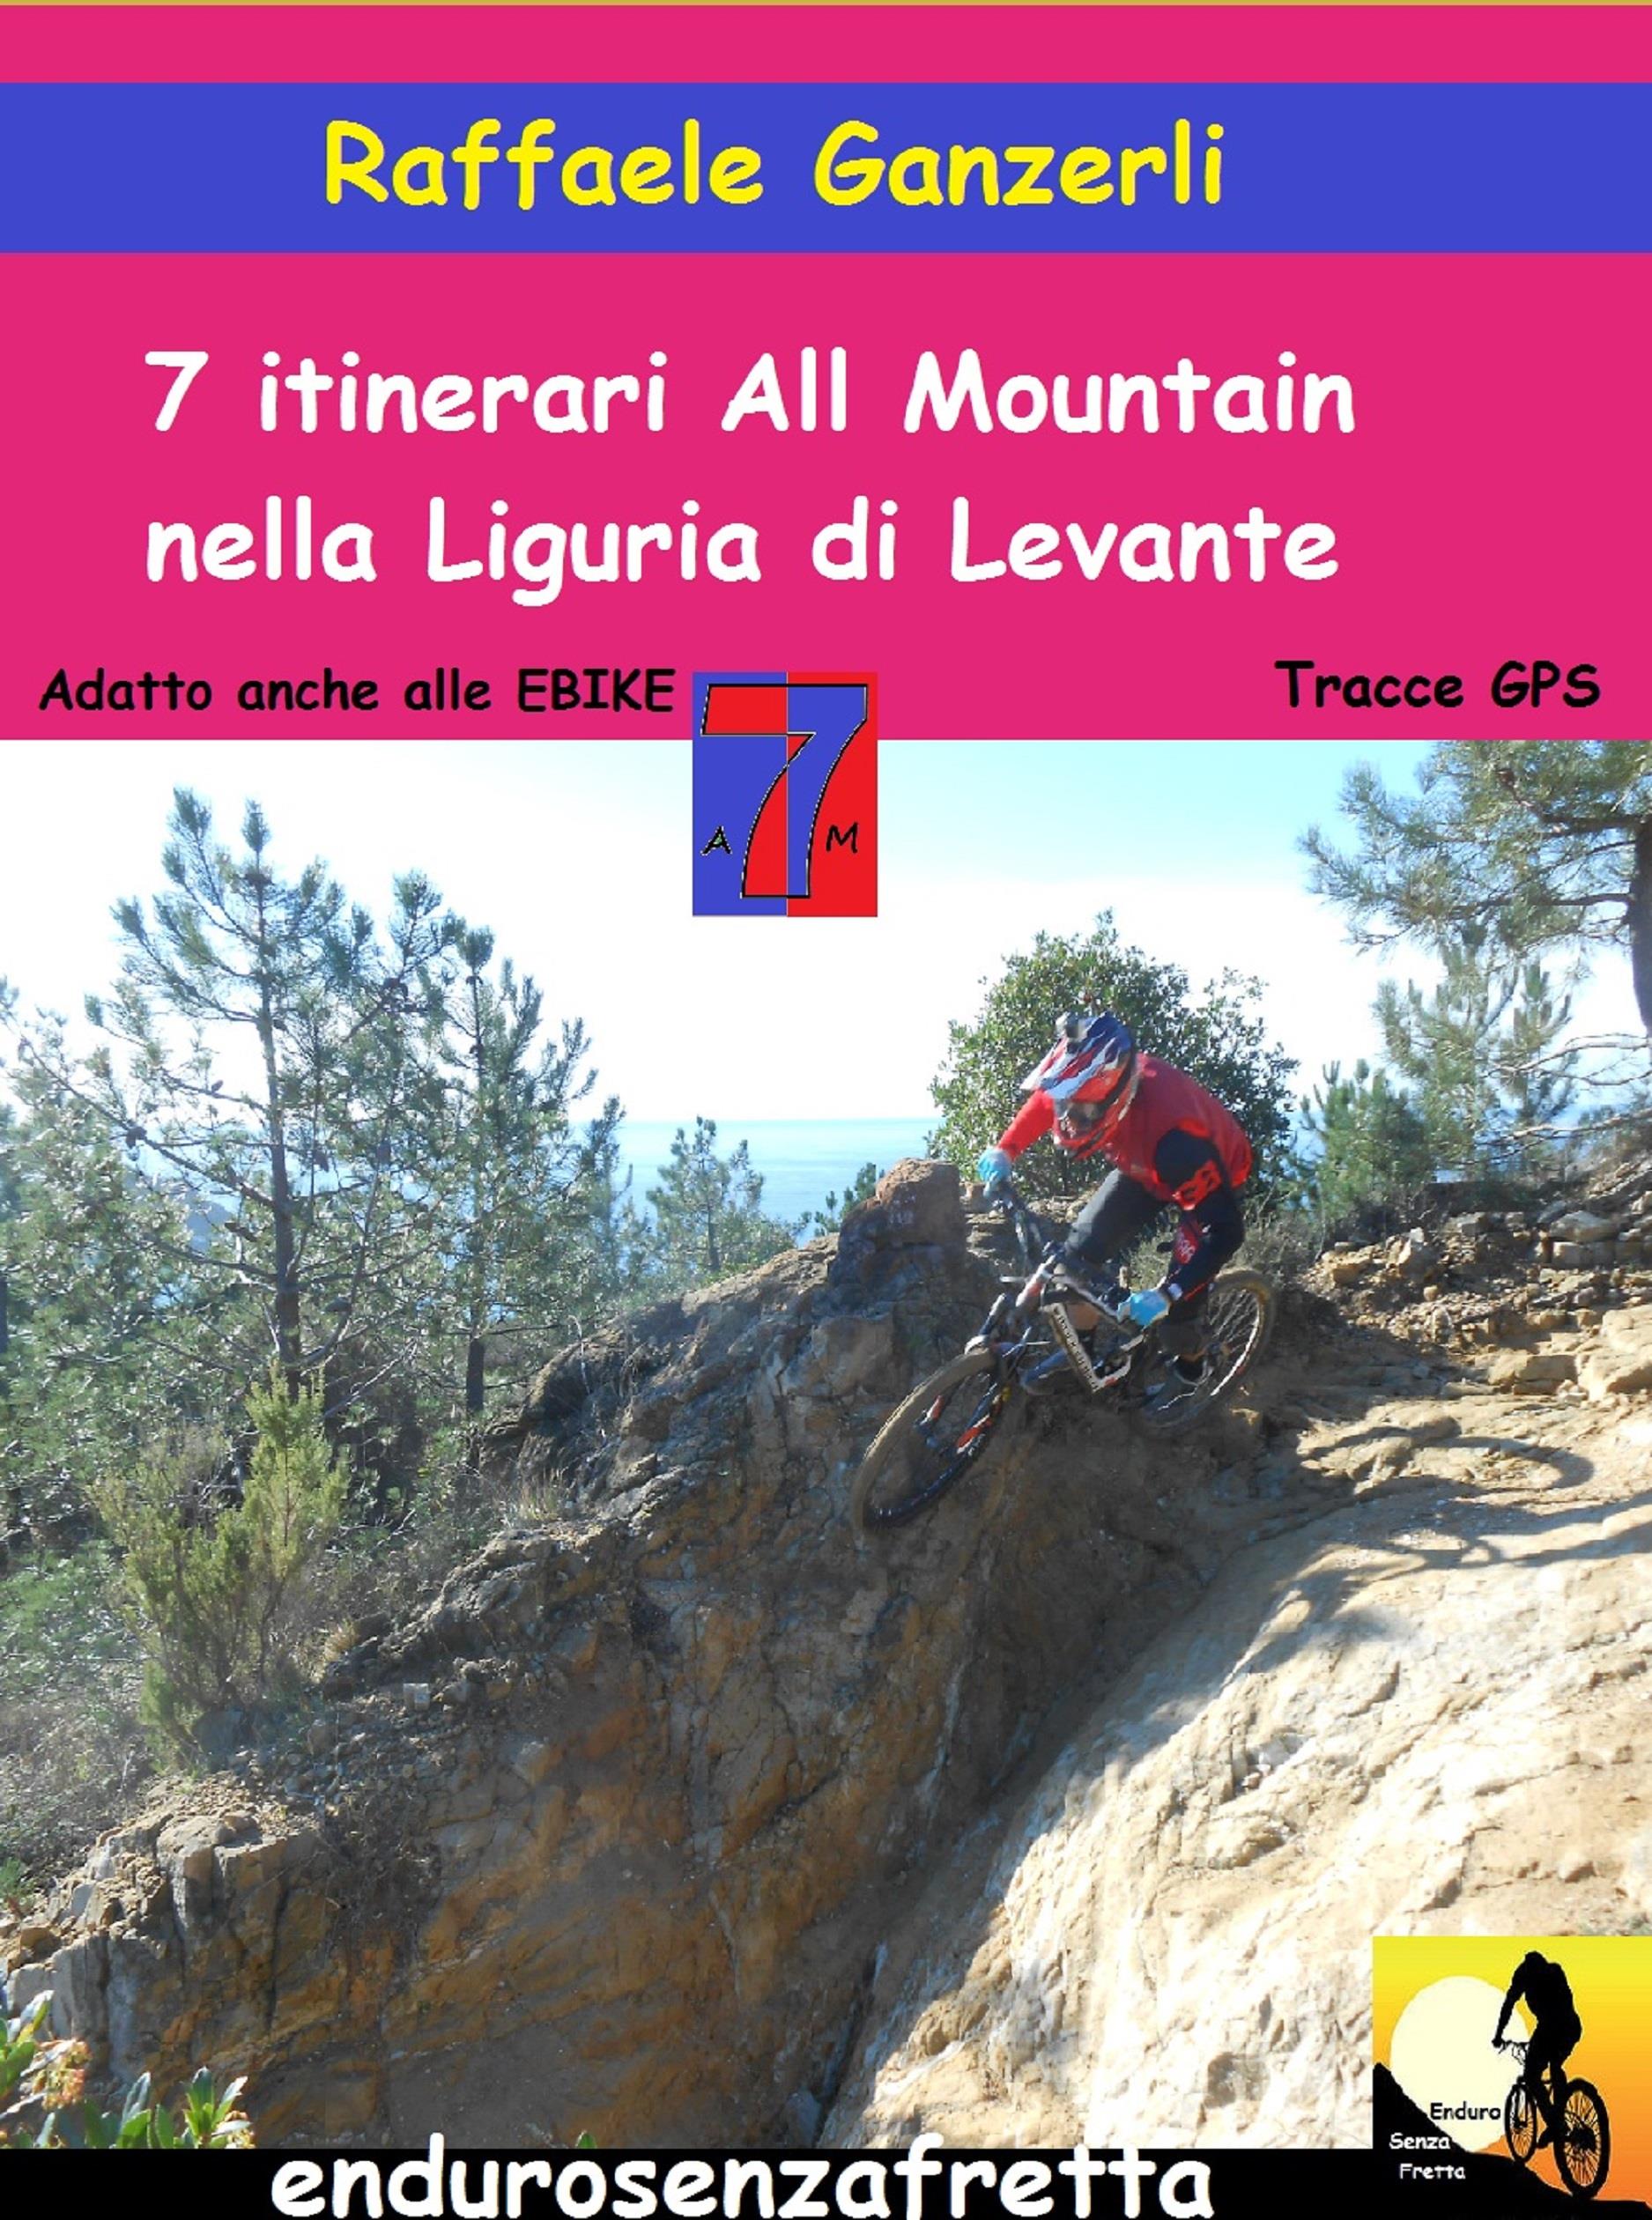 7 Itinerari All Mountain nella Liguria di Levante